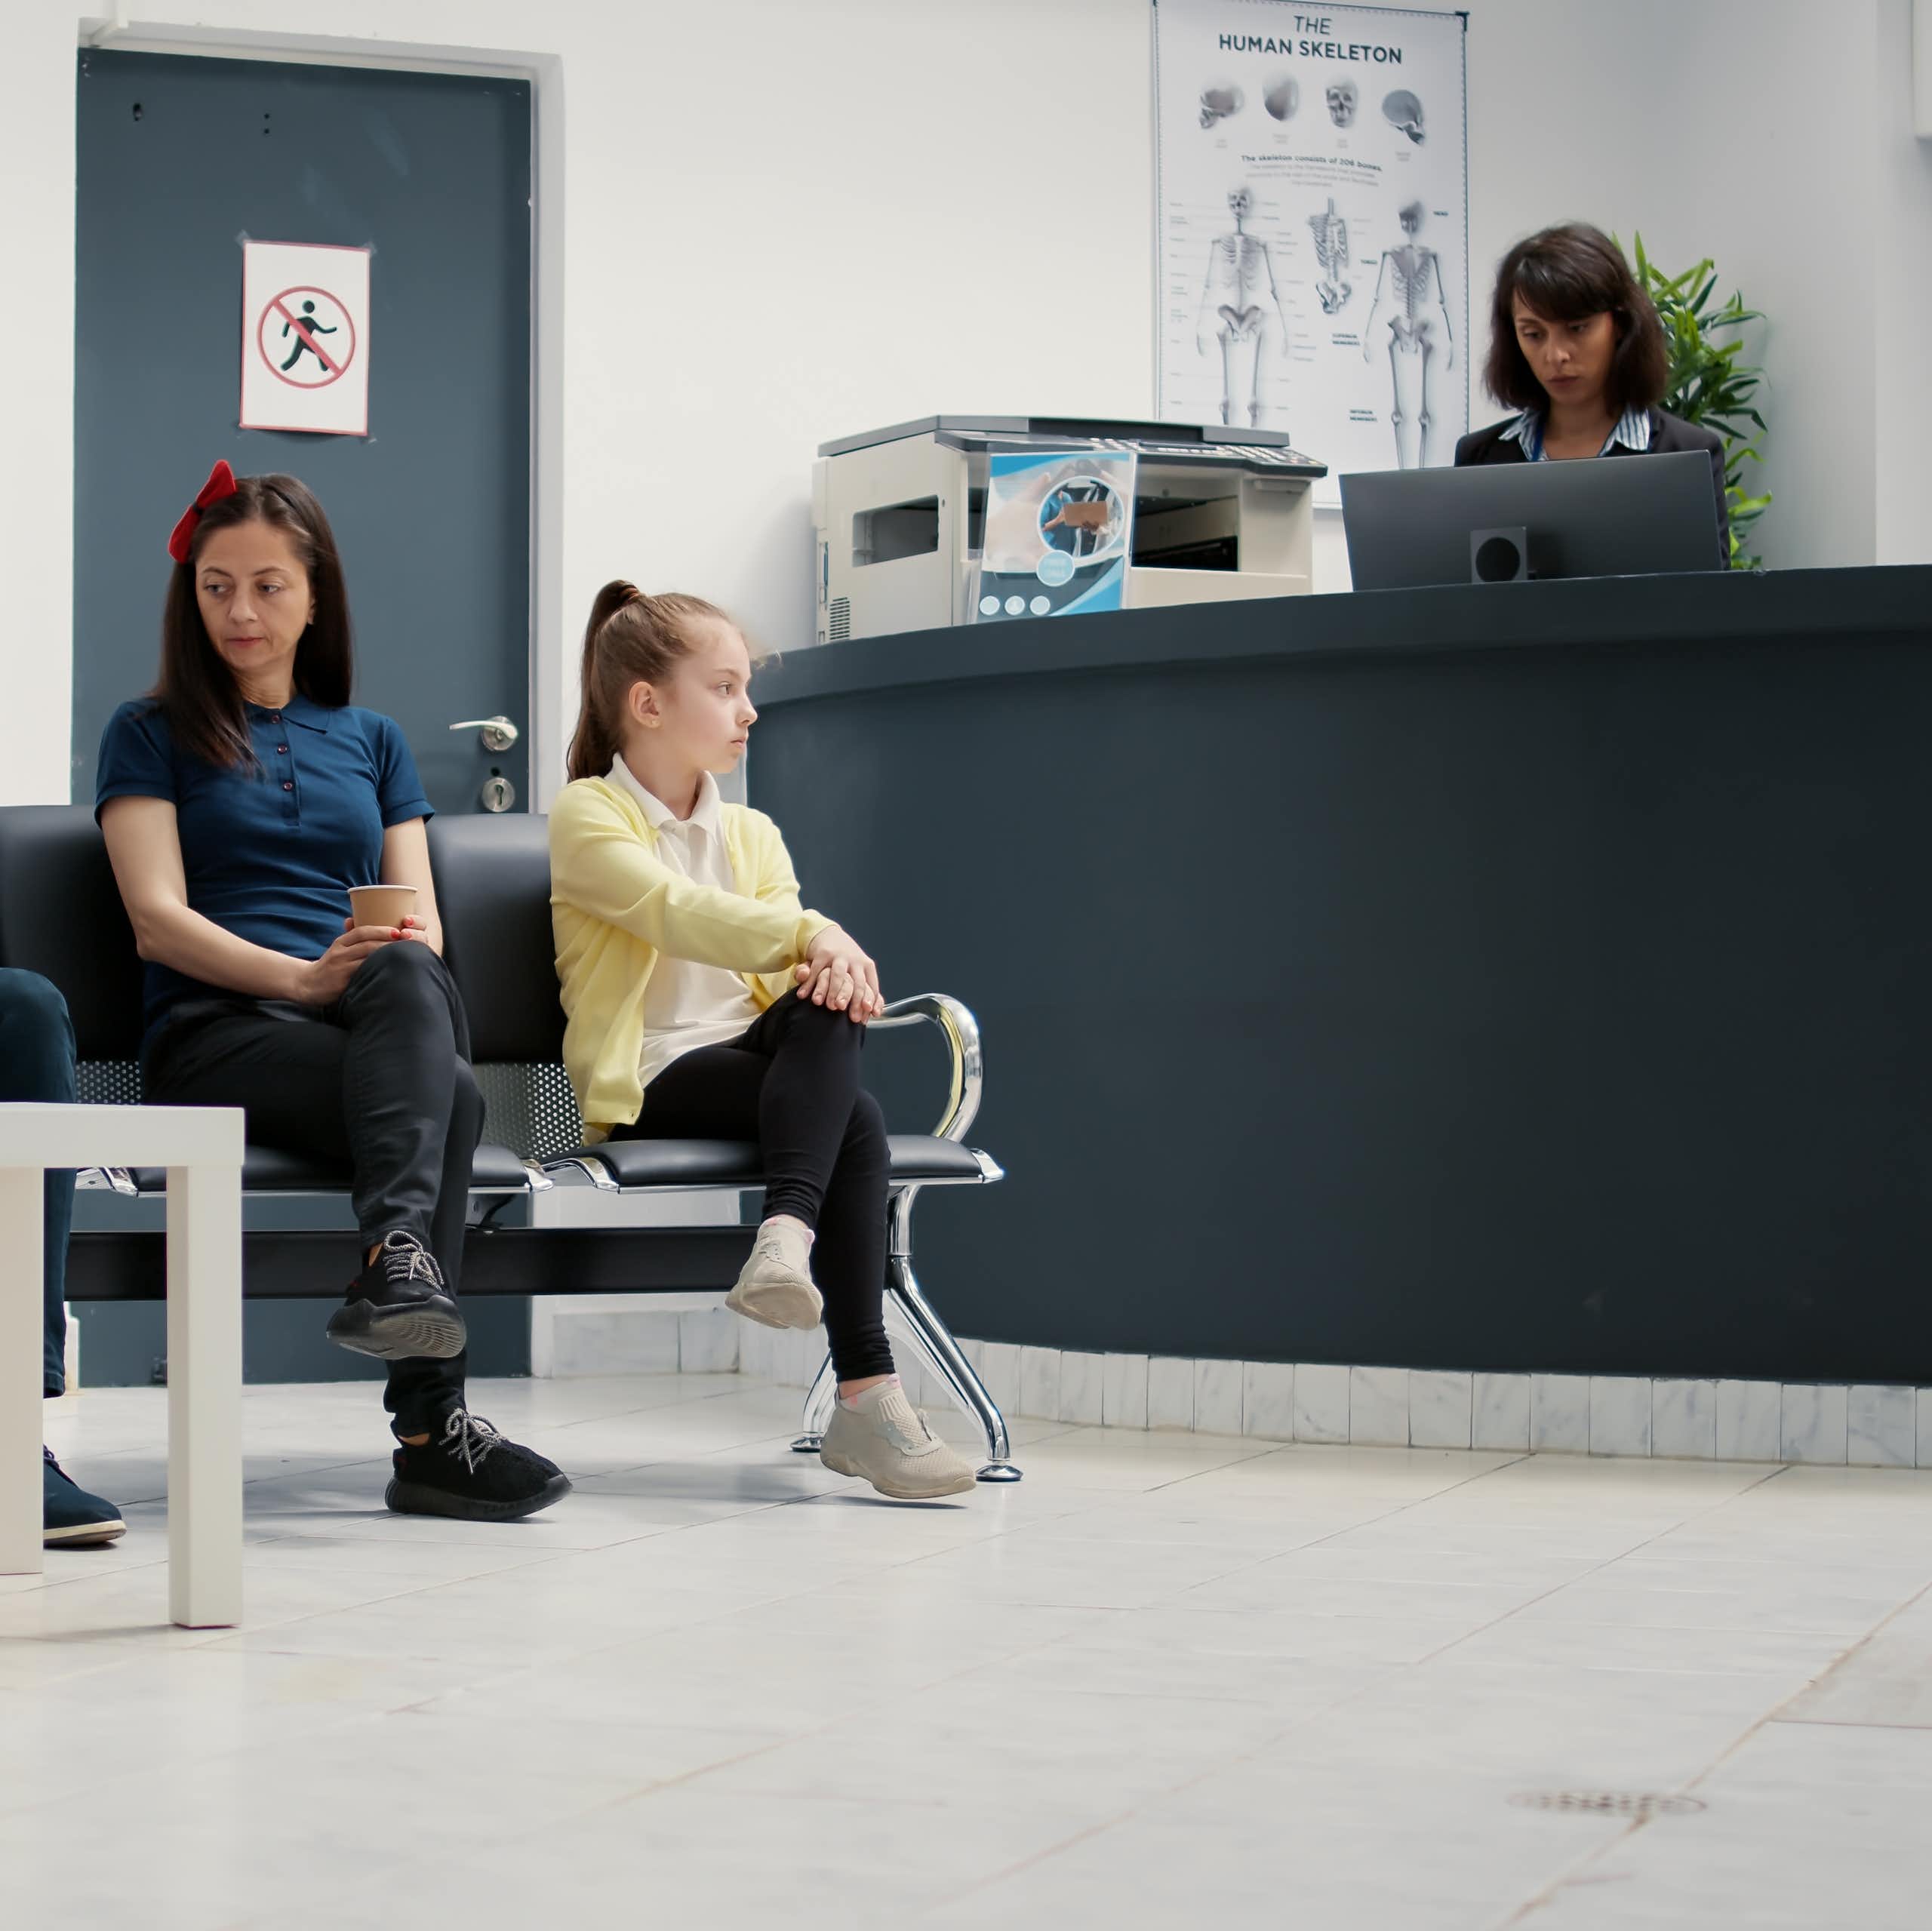 Des personnes attendent dans une salle d'attente pour un rendez-vous médical.